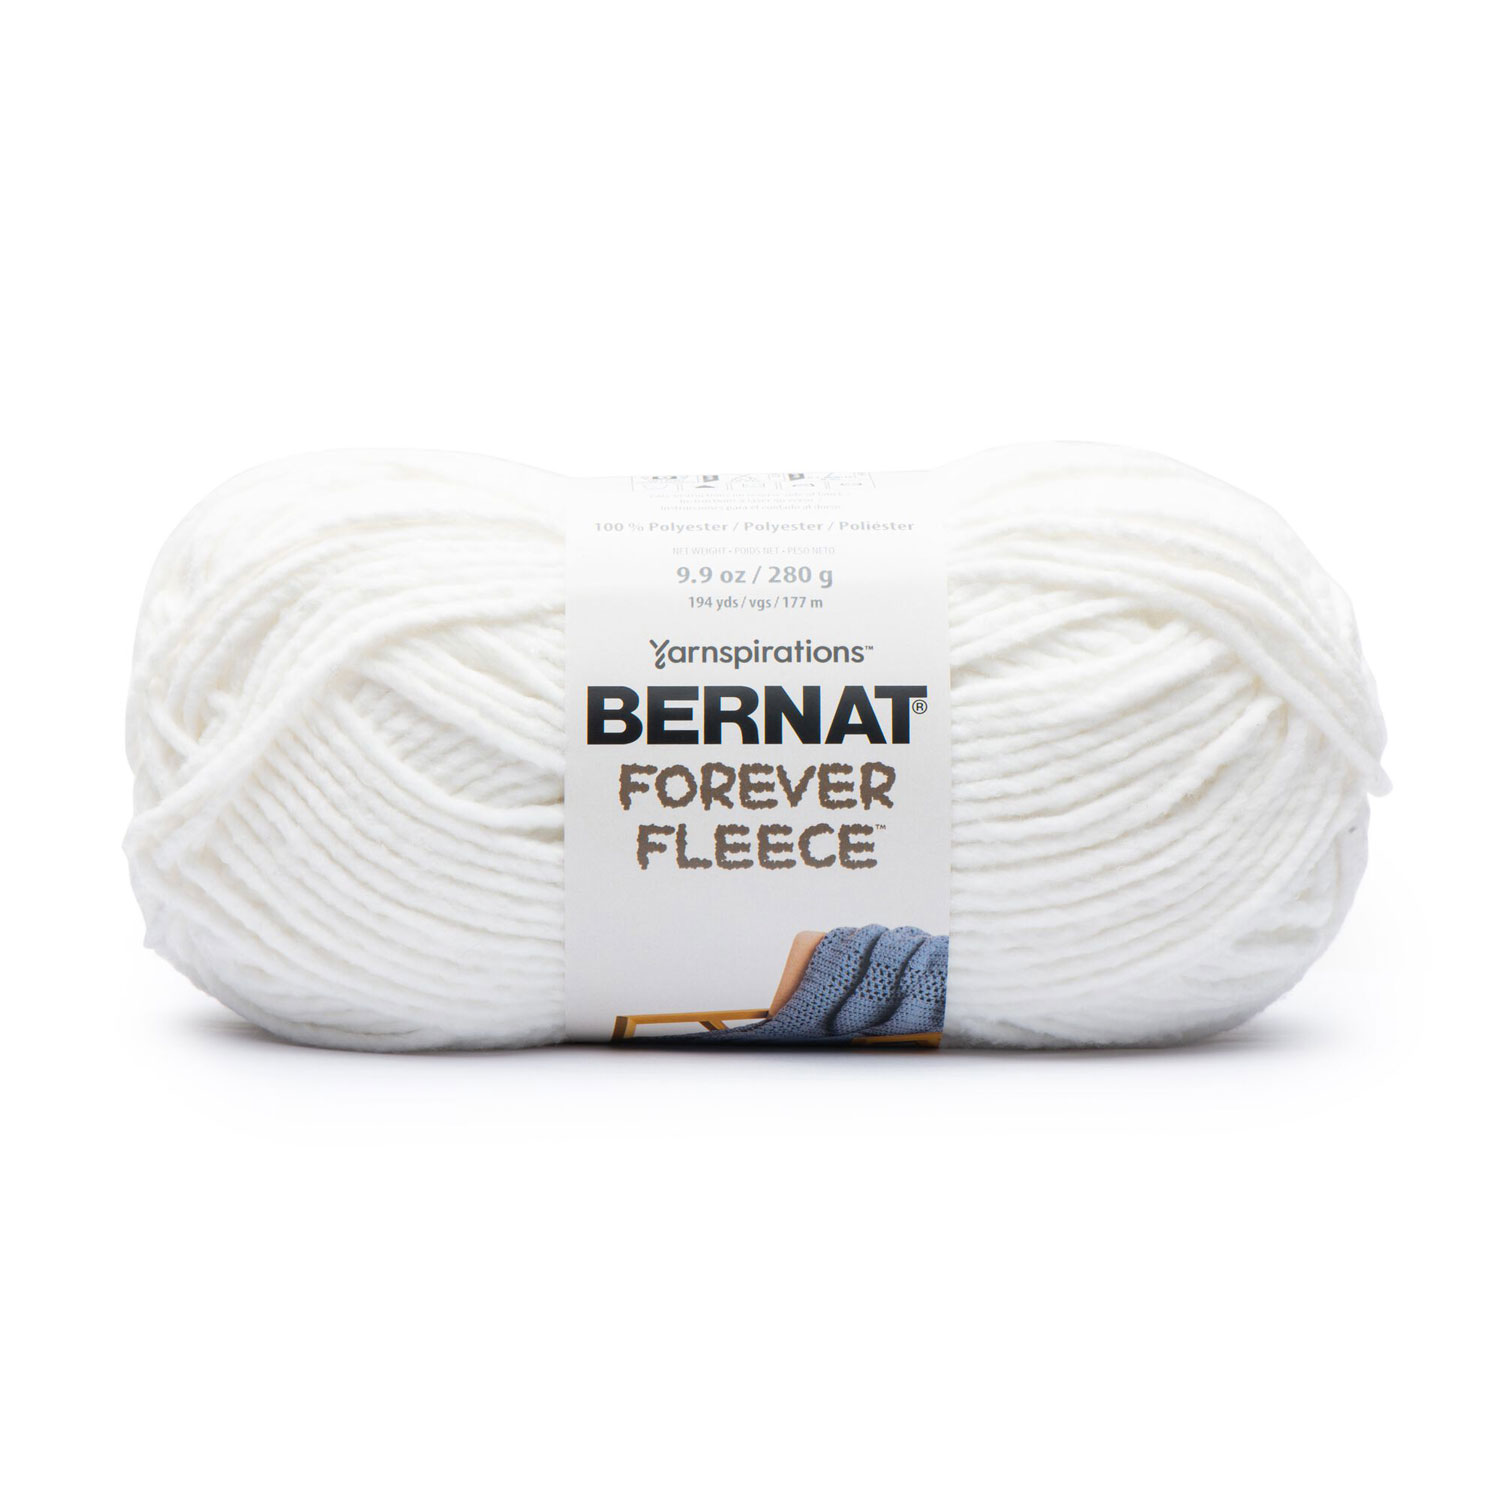 Bernat Forever Fleece - Yarn, white noise